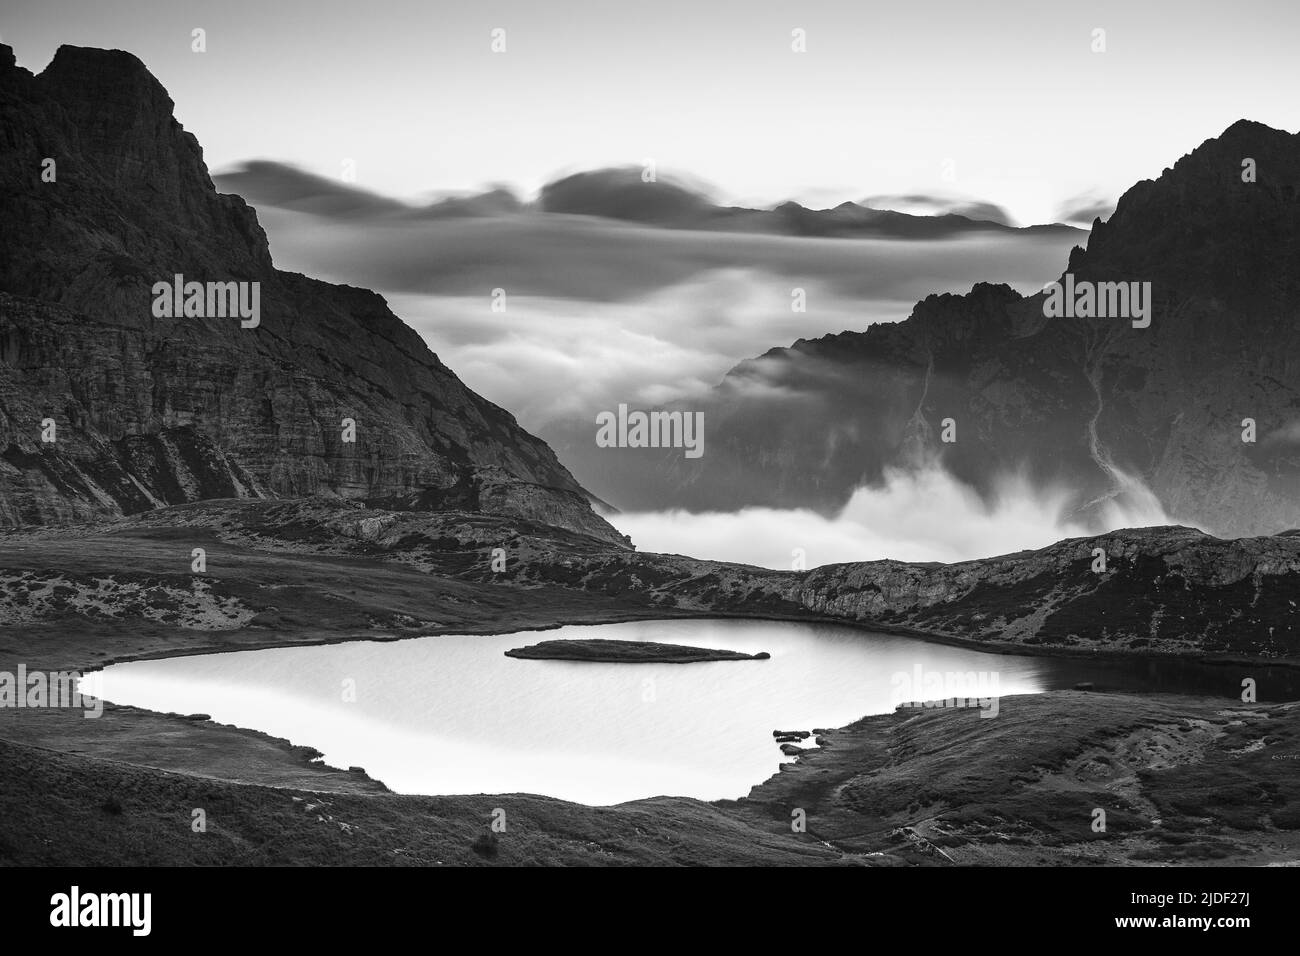 Evocador amanecer en Laghi dei Piani (lagos Piani) en los Dolomitas Sexten. Marea de nubes sobre valles. Picos montañosos. Alpes italianos. Europa. Foto de stock